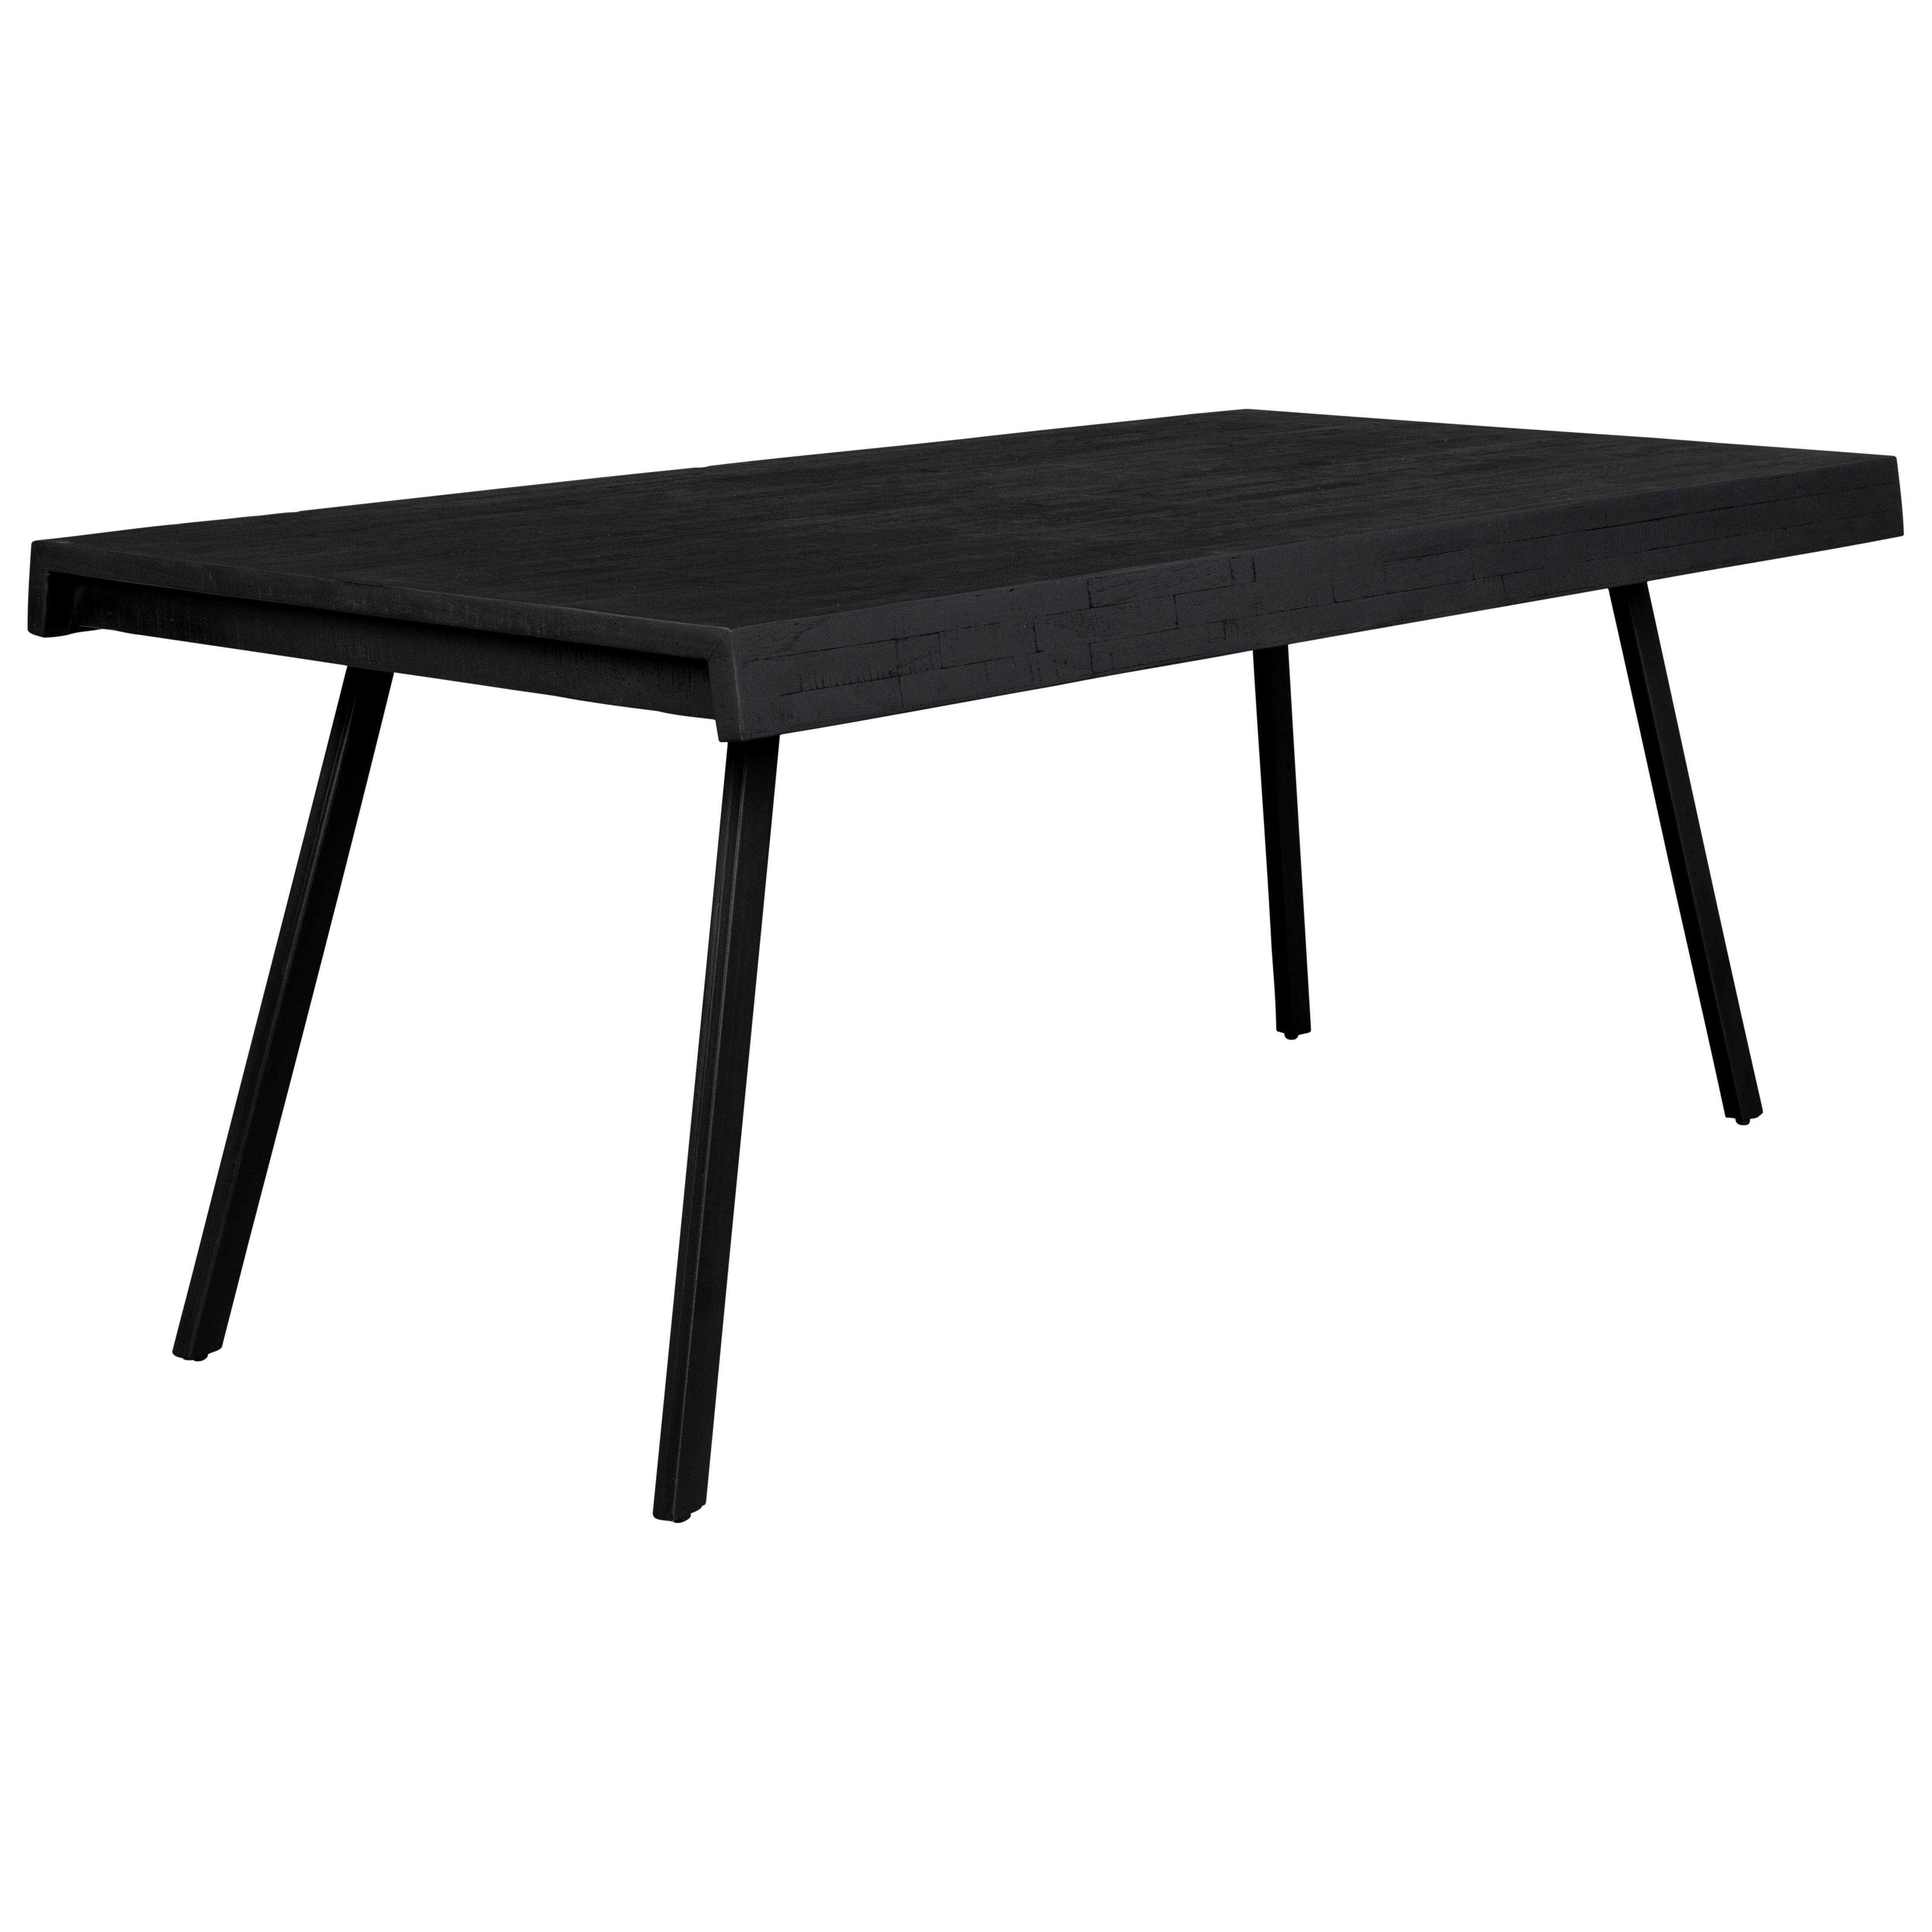 Table suri 220x100 black